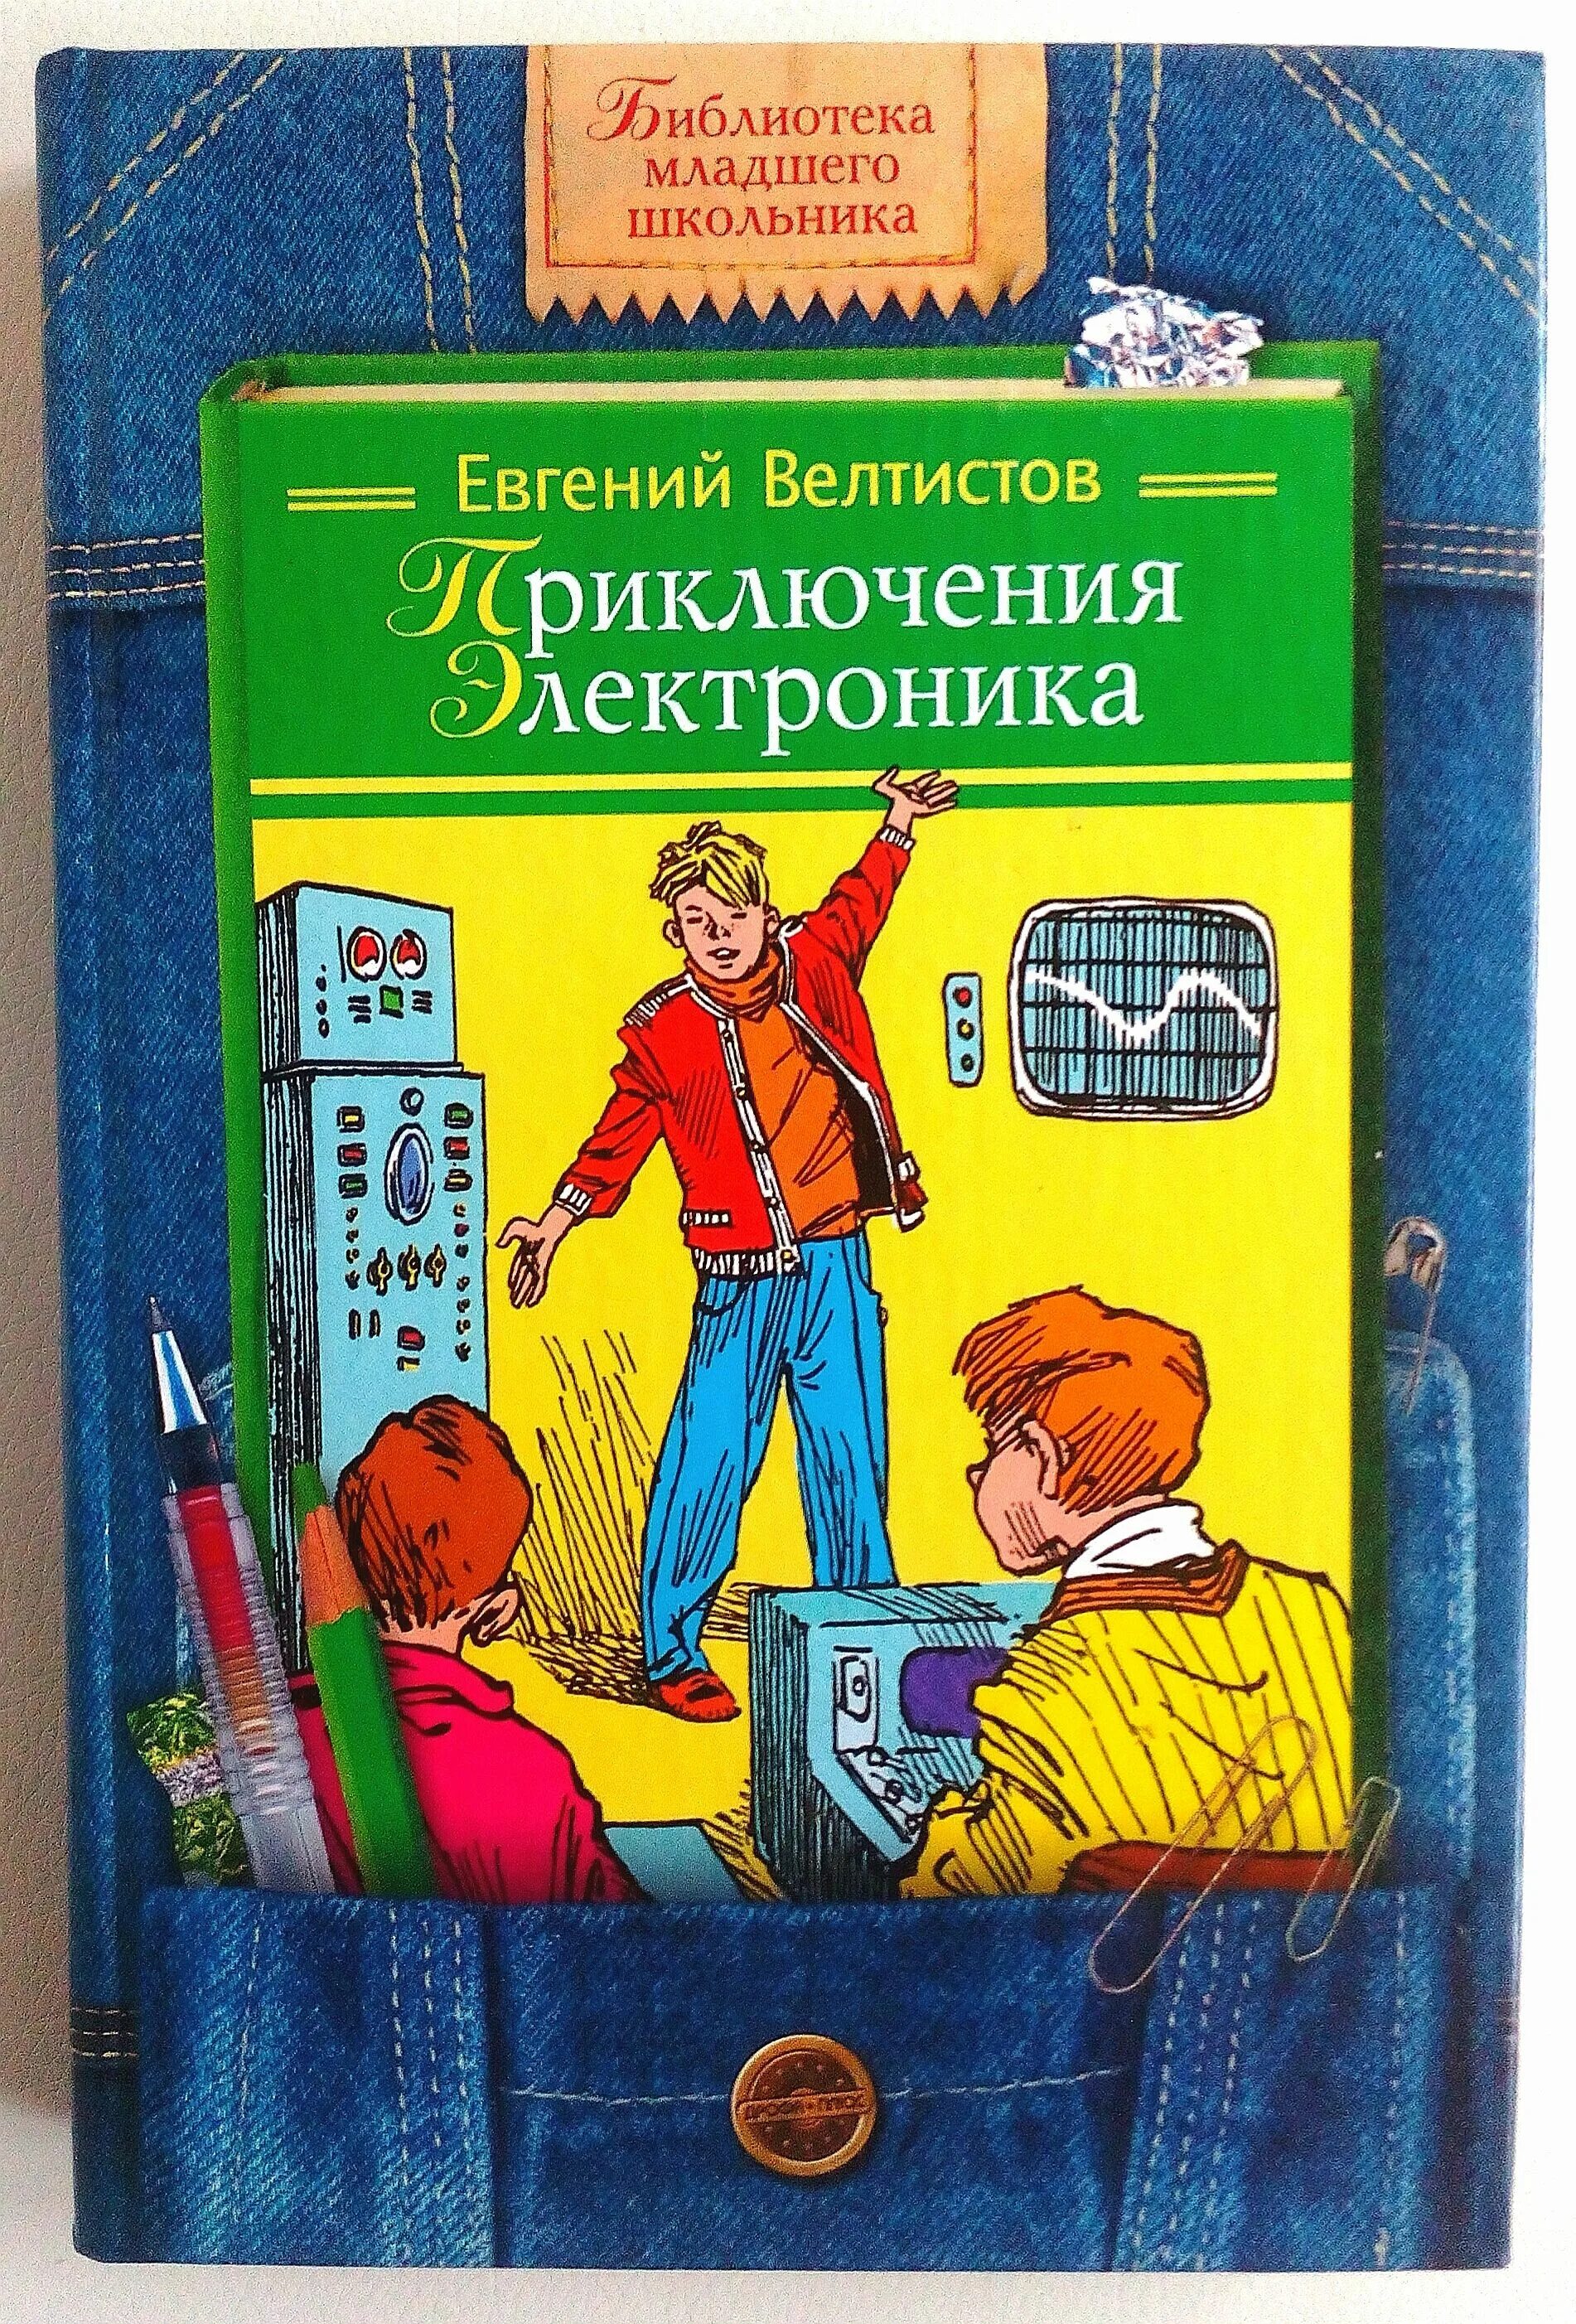 Приключения электроника»Евгения Велтисова.